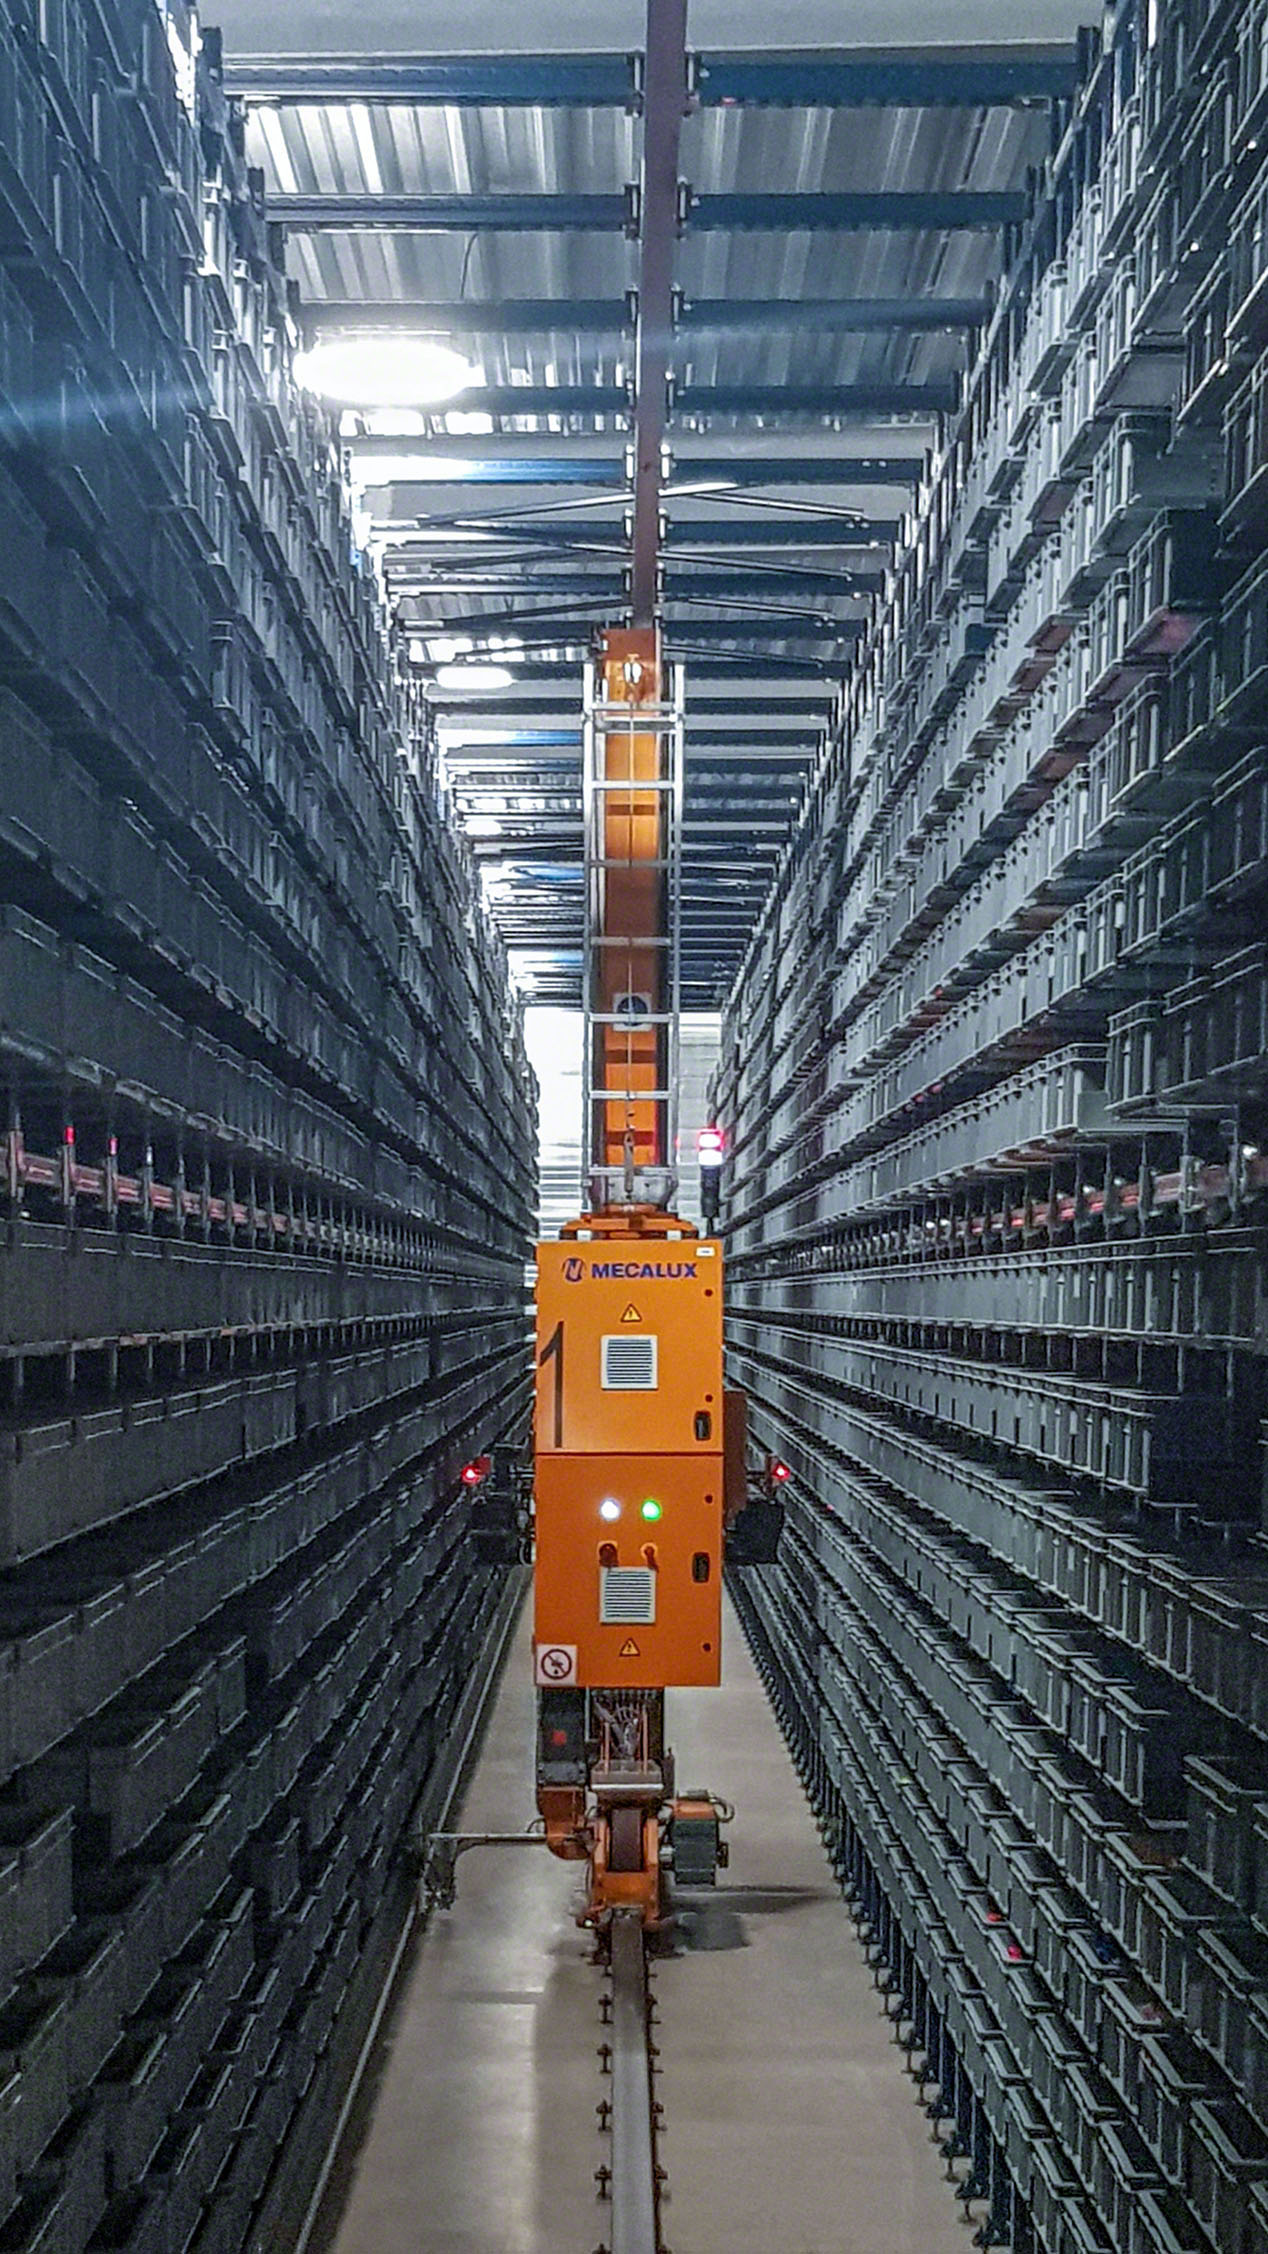 Almacenamiento automatizado de 7.800 cajas con piezas de juguetes